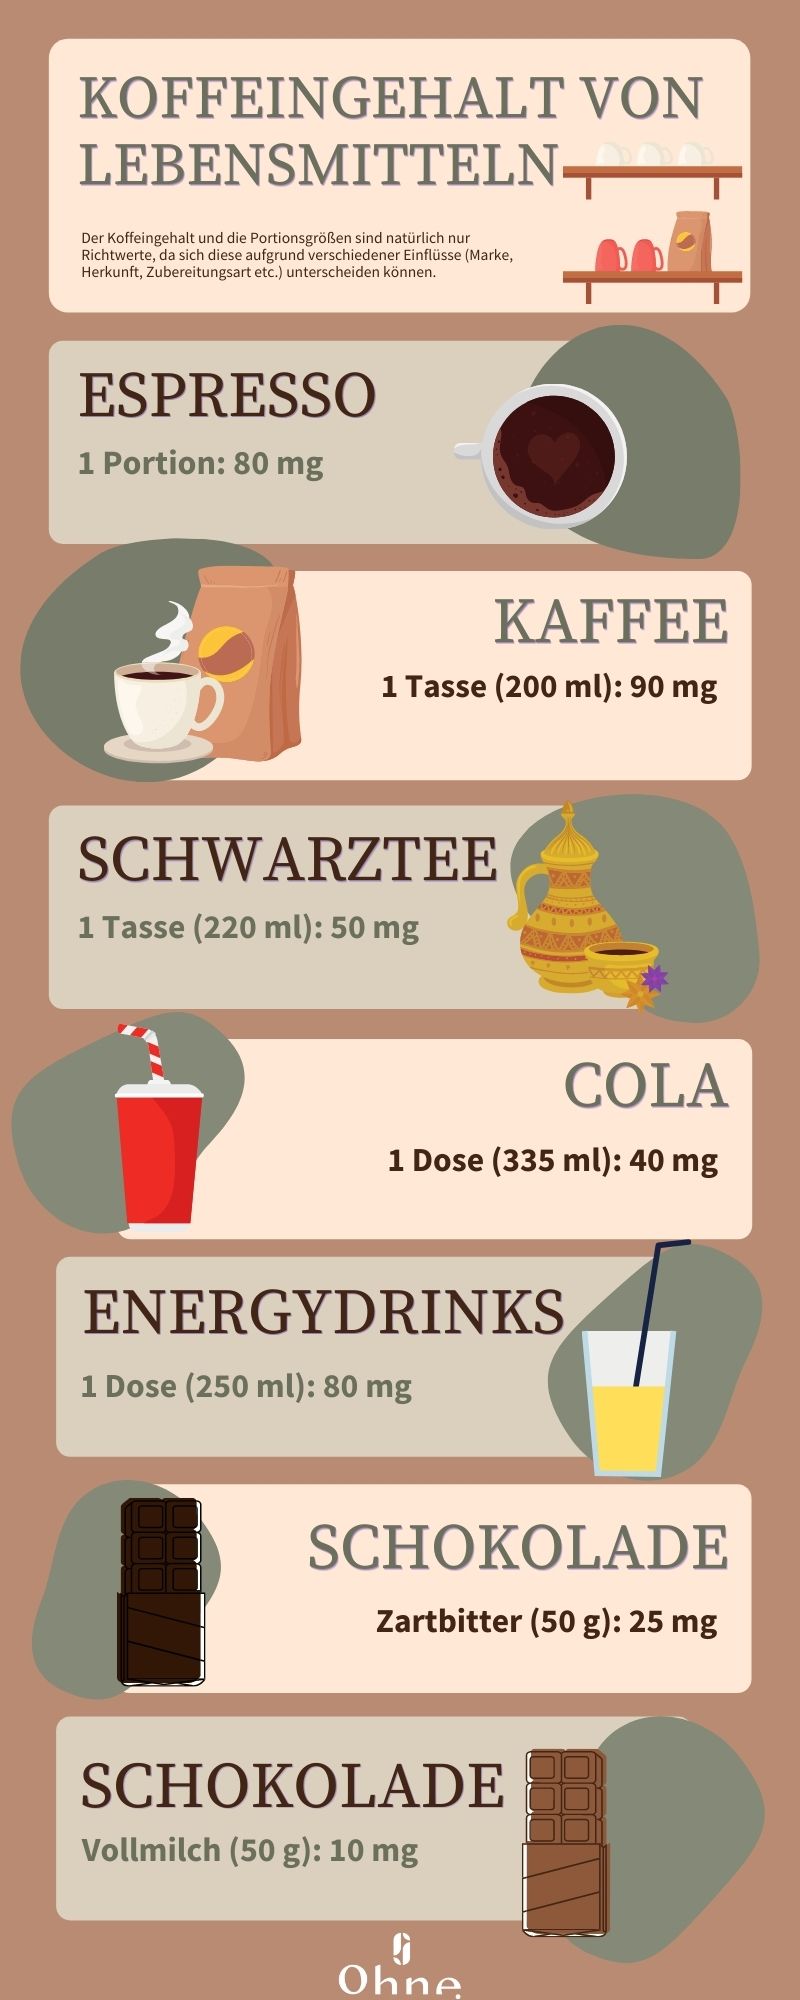 Infografik von OHNE zum Thema Koffeingehalt in Kaffee und anderen Produkten